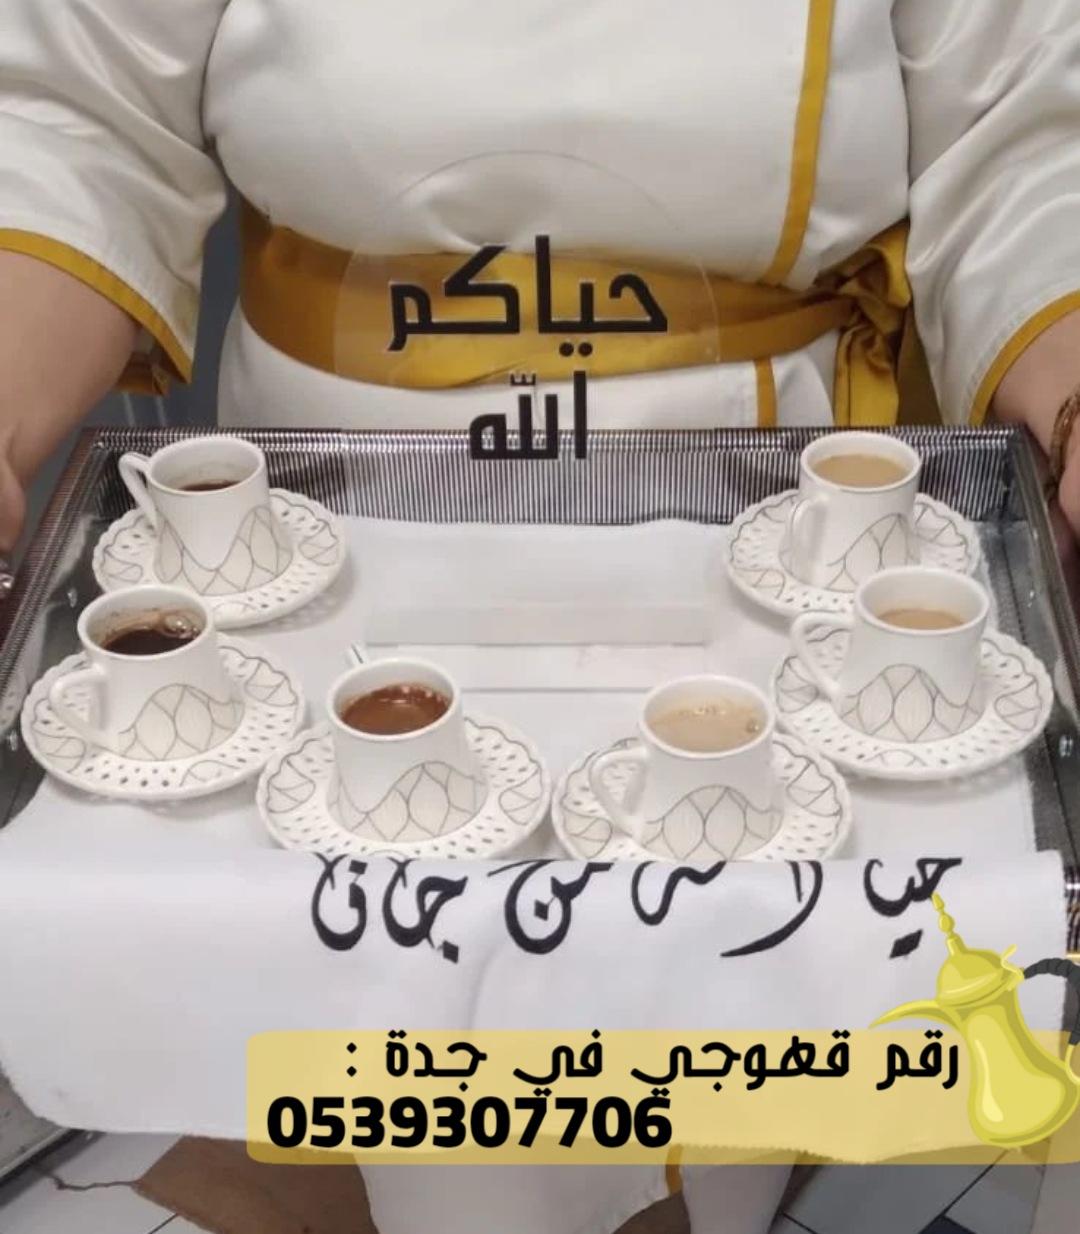 رقم صباب قهوة في جدة,0539307706 273405942